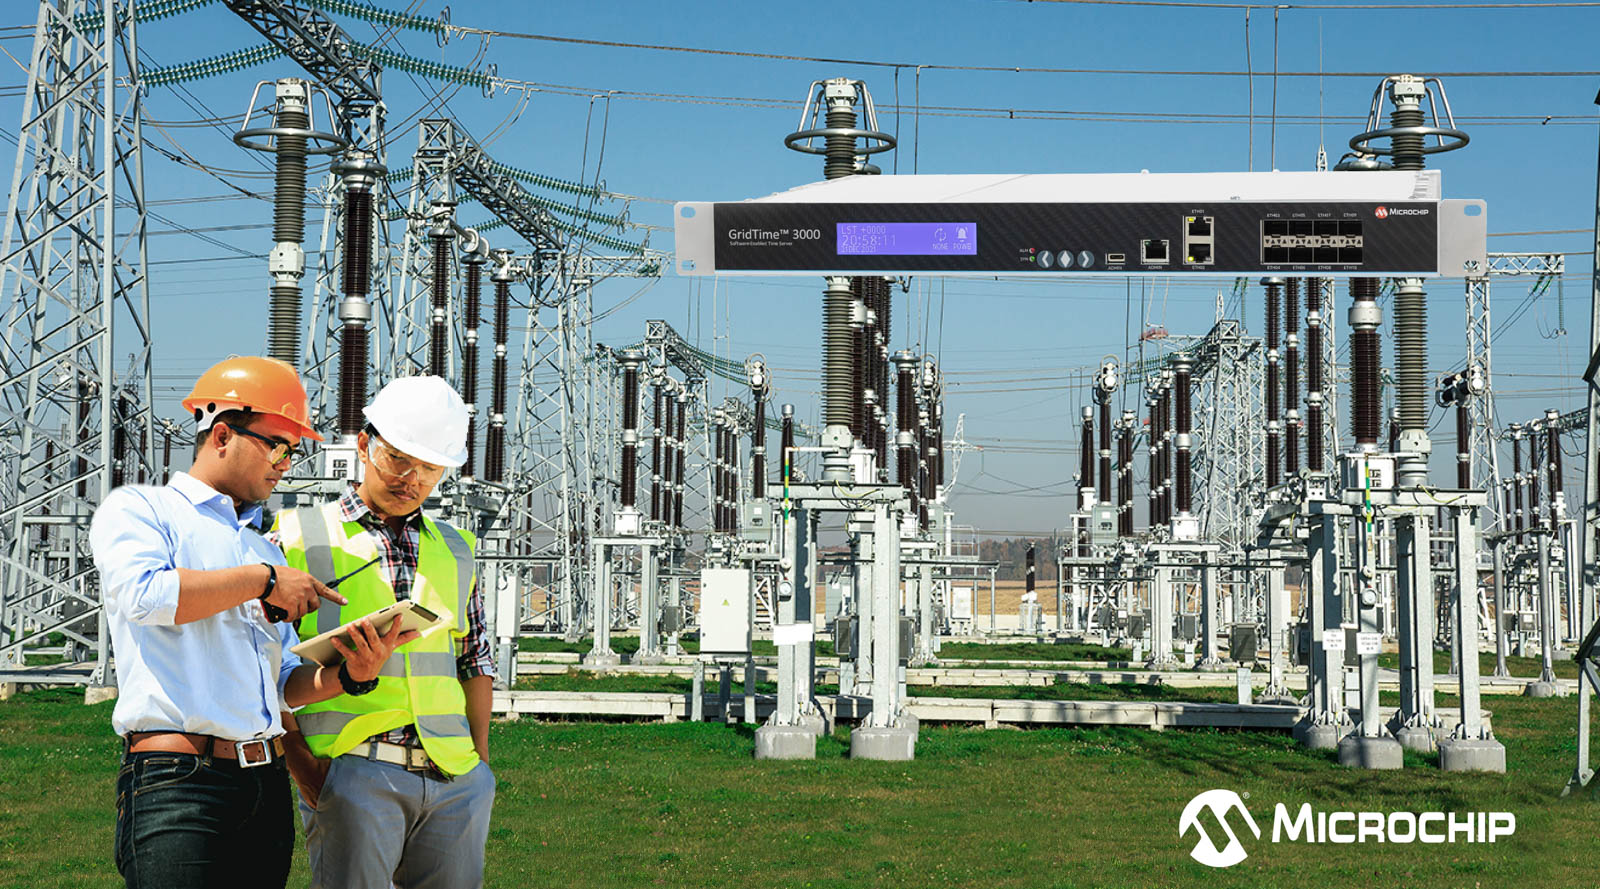 Nguồn tín hiệu định thời và đồng bộ mạng ổn định, có dự phòng dành cho các nhà khai thác hệ thống điện lực